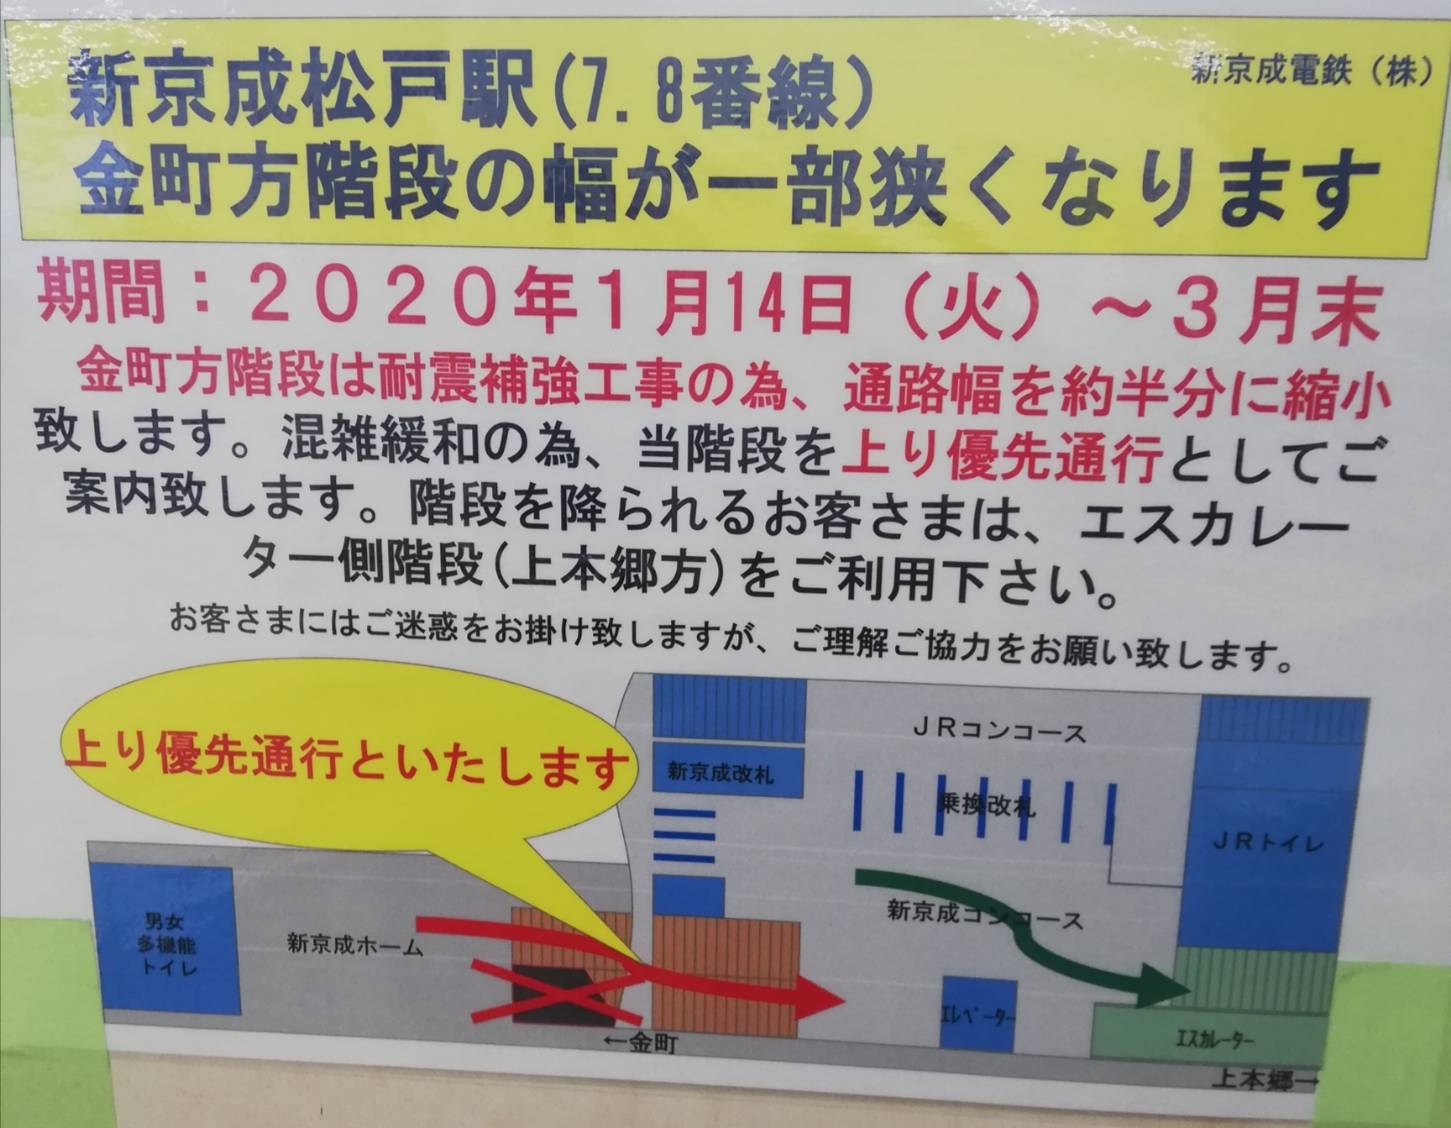 松戸駅新京成耐震補強工事階段